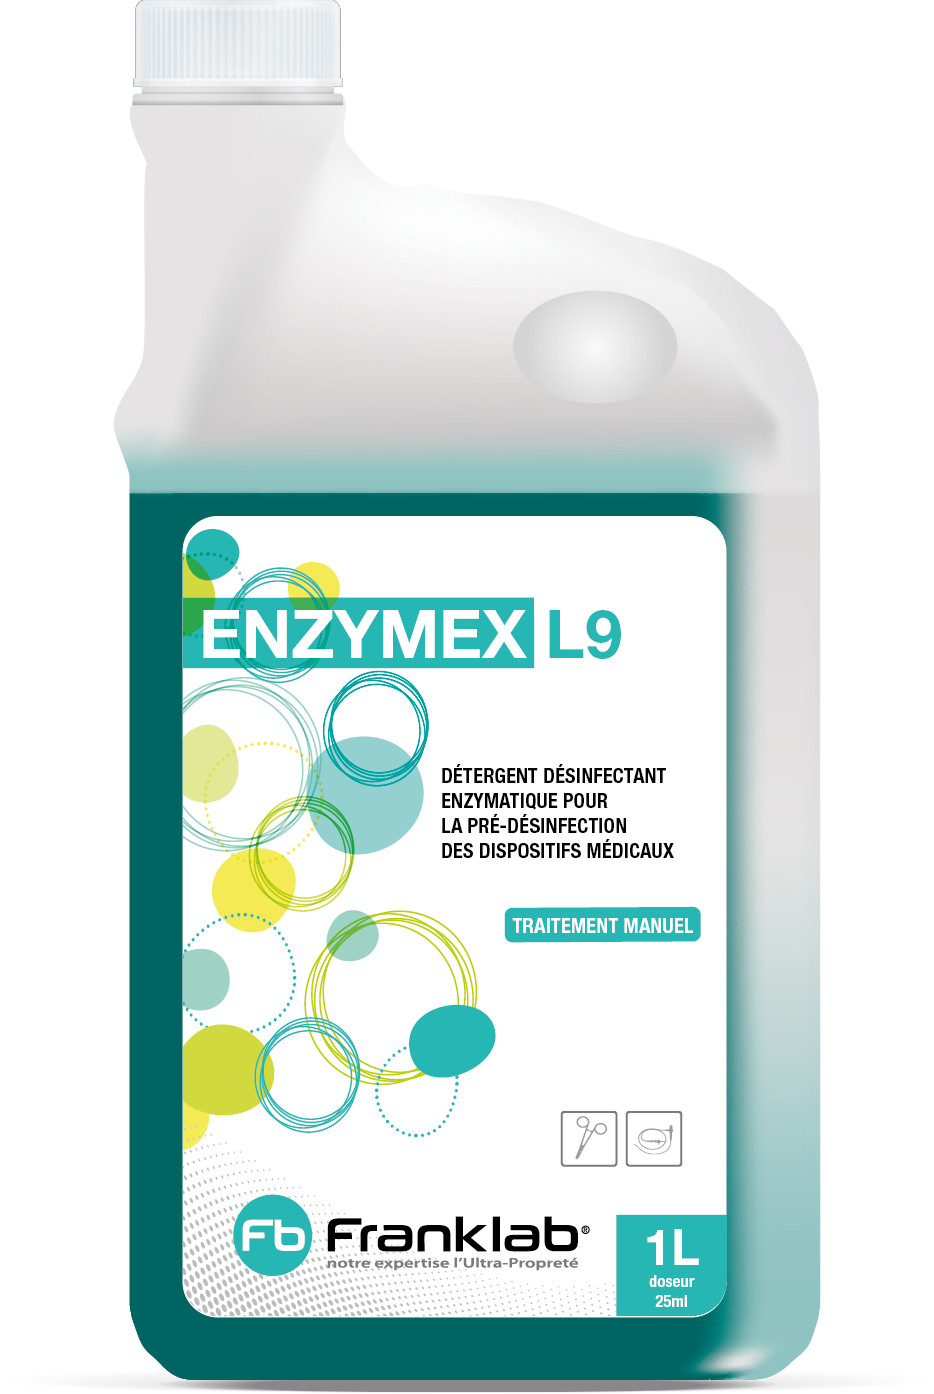 Detergent desinfectant enzymatique l9 1litre doseur - Drexco Médical